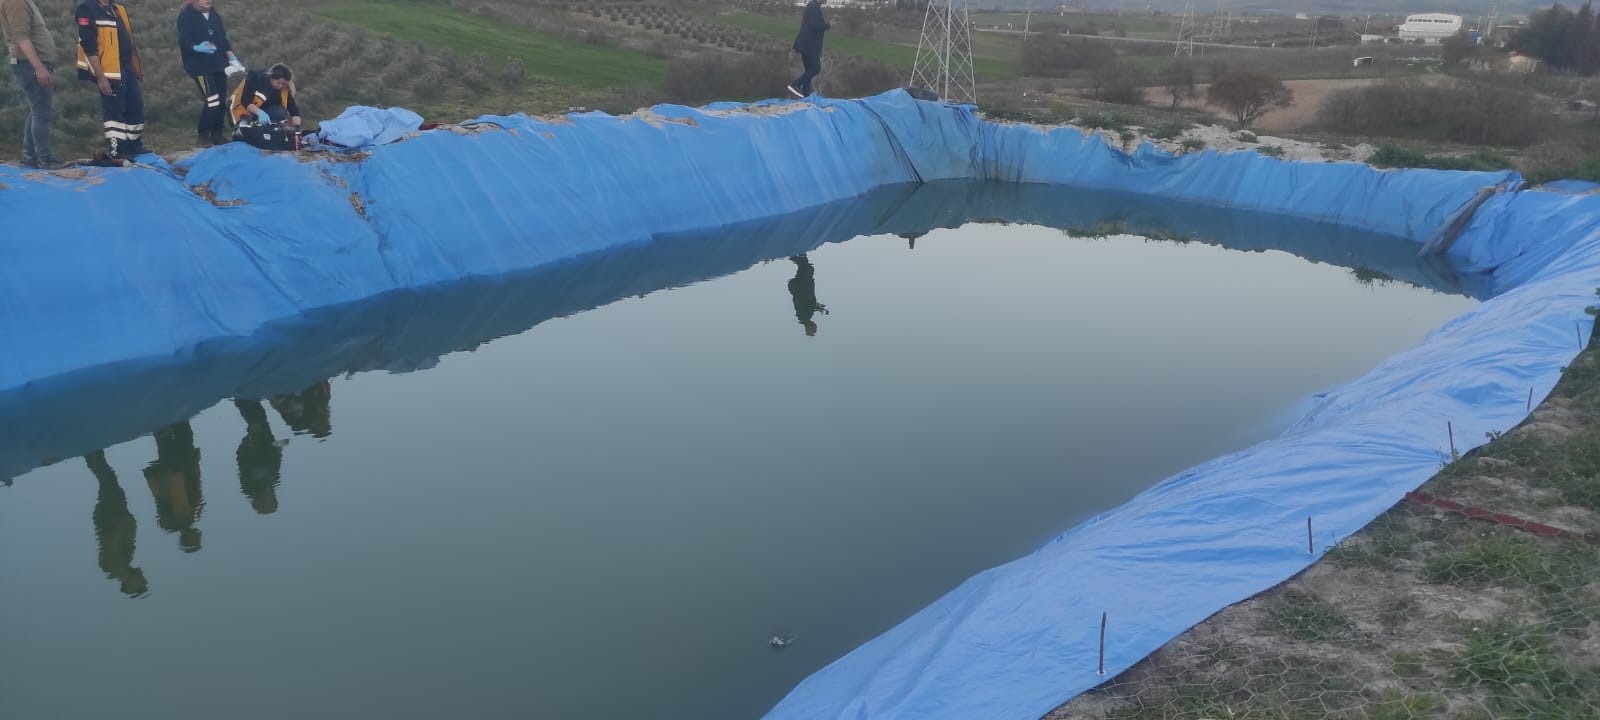 Manisa’da Sulama Havuzuna Düşen Bir Kişi Hayatını Kaybetti (2)